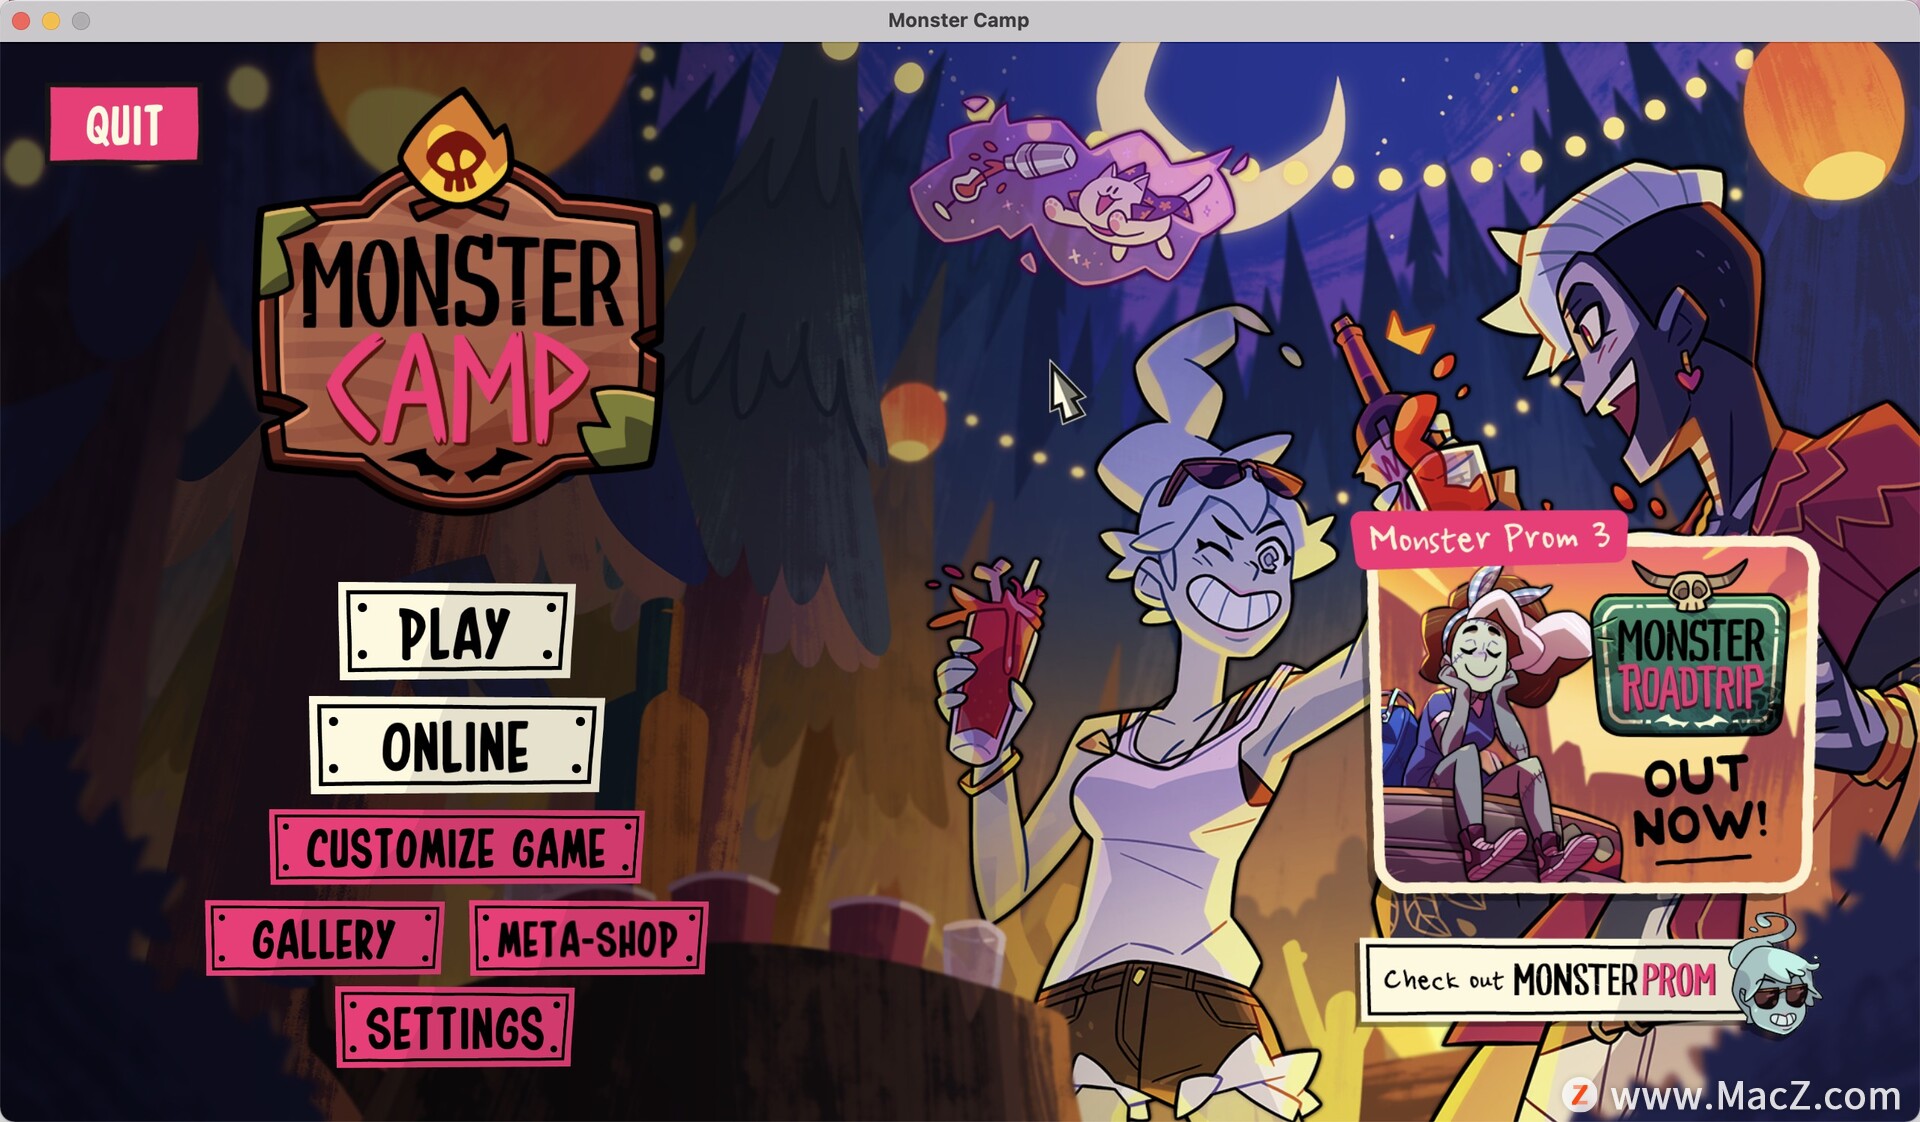 魔物学园2:魔物营地Monster Prom 2: Monster Camp for mac(文字冒险类游戏)